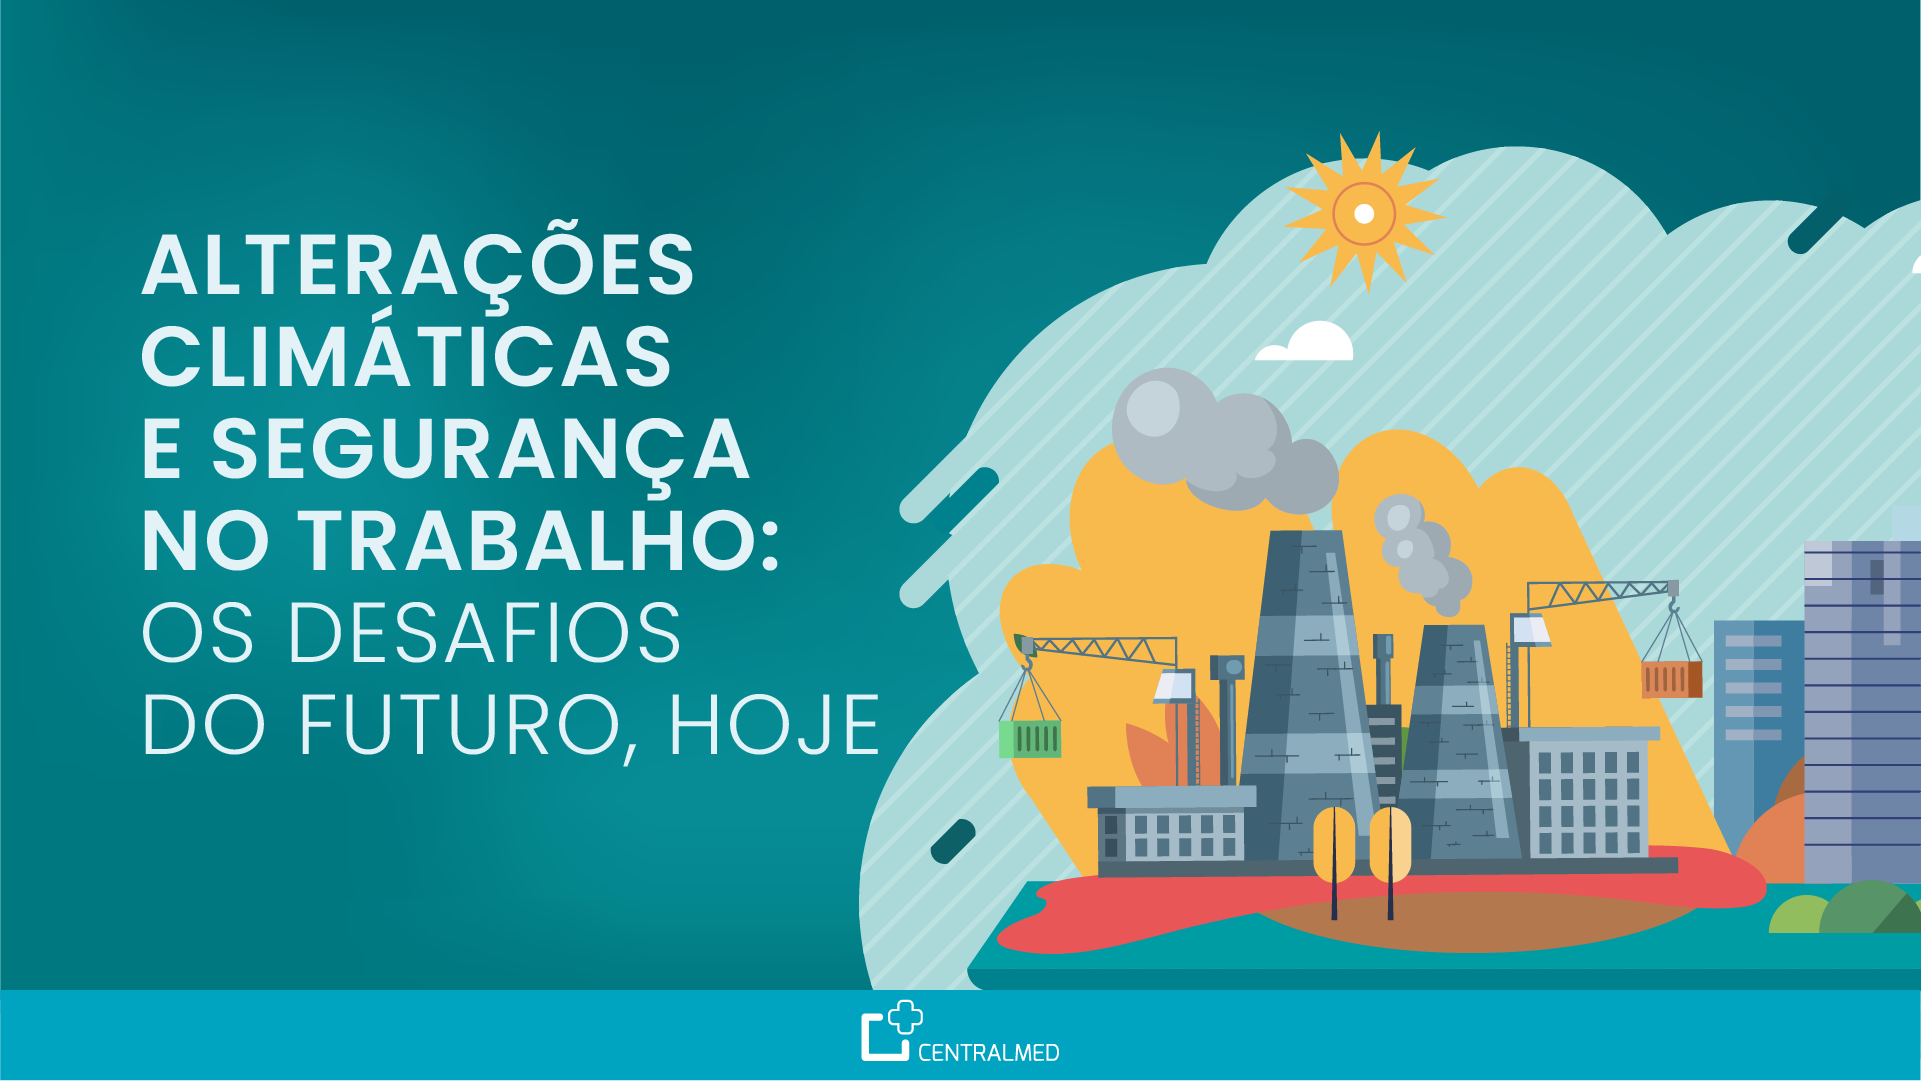 A relação entre alterações climáticas e segurança no trabalho levanta vários desafios às empresas portuguesas.